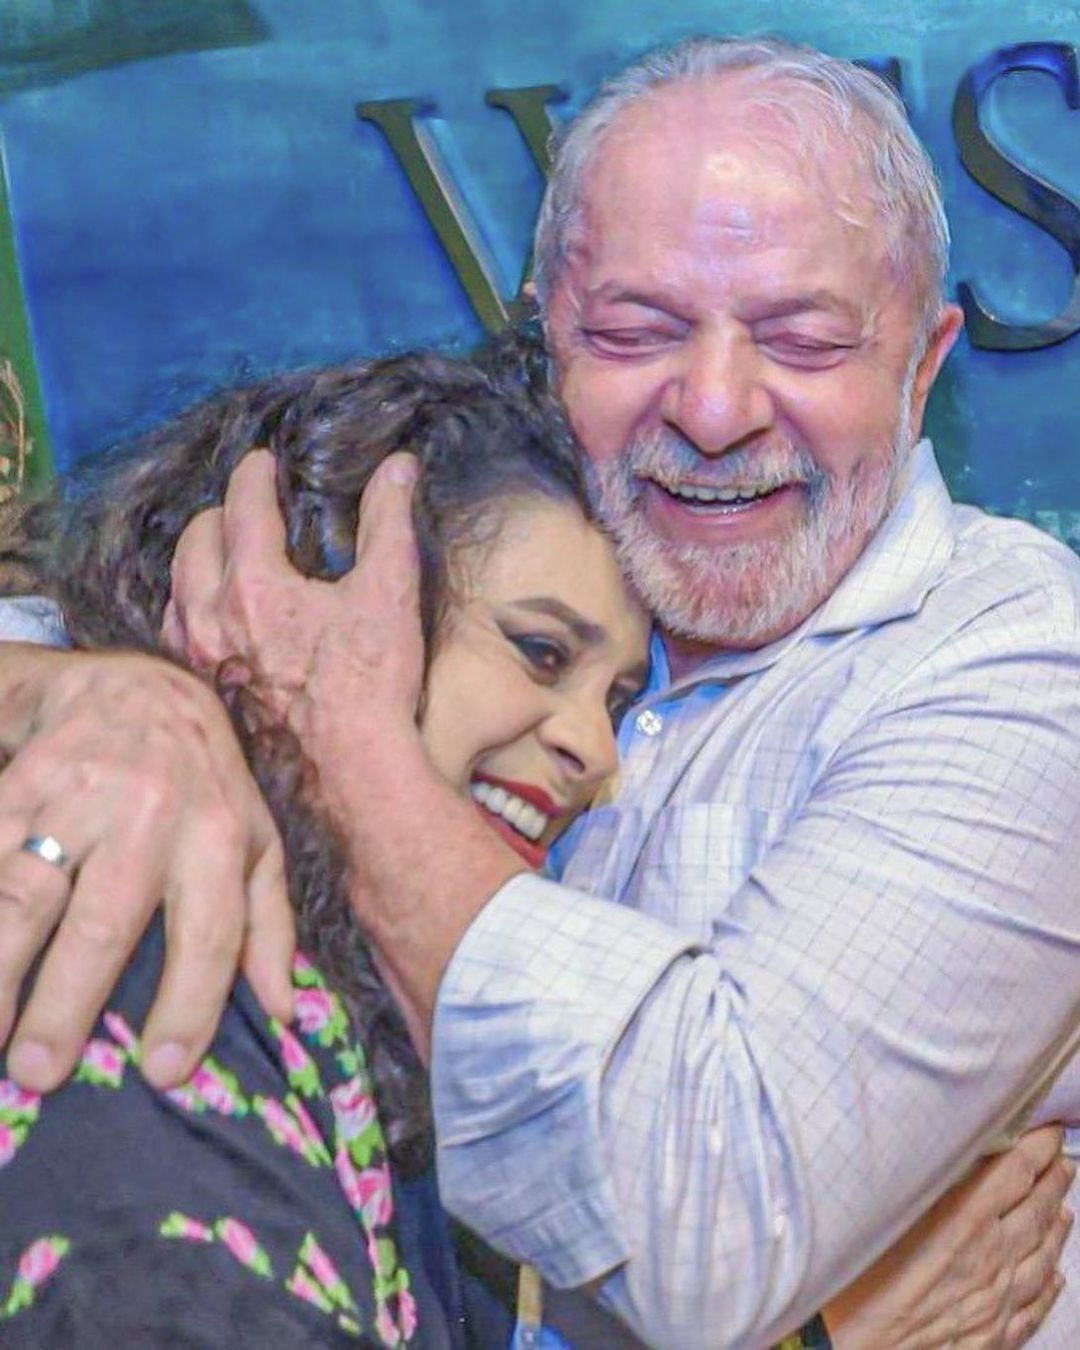 Presidente eleito, Lula lamenta a morte de Gal Costa; Dilma Rousseff fala em choque